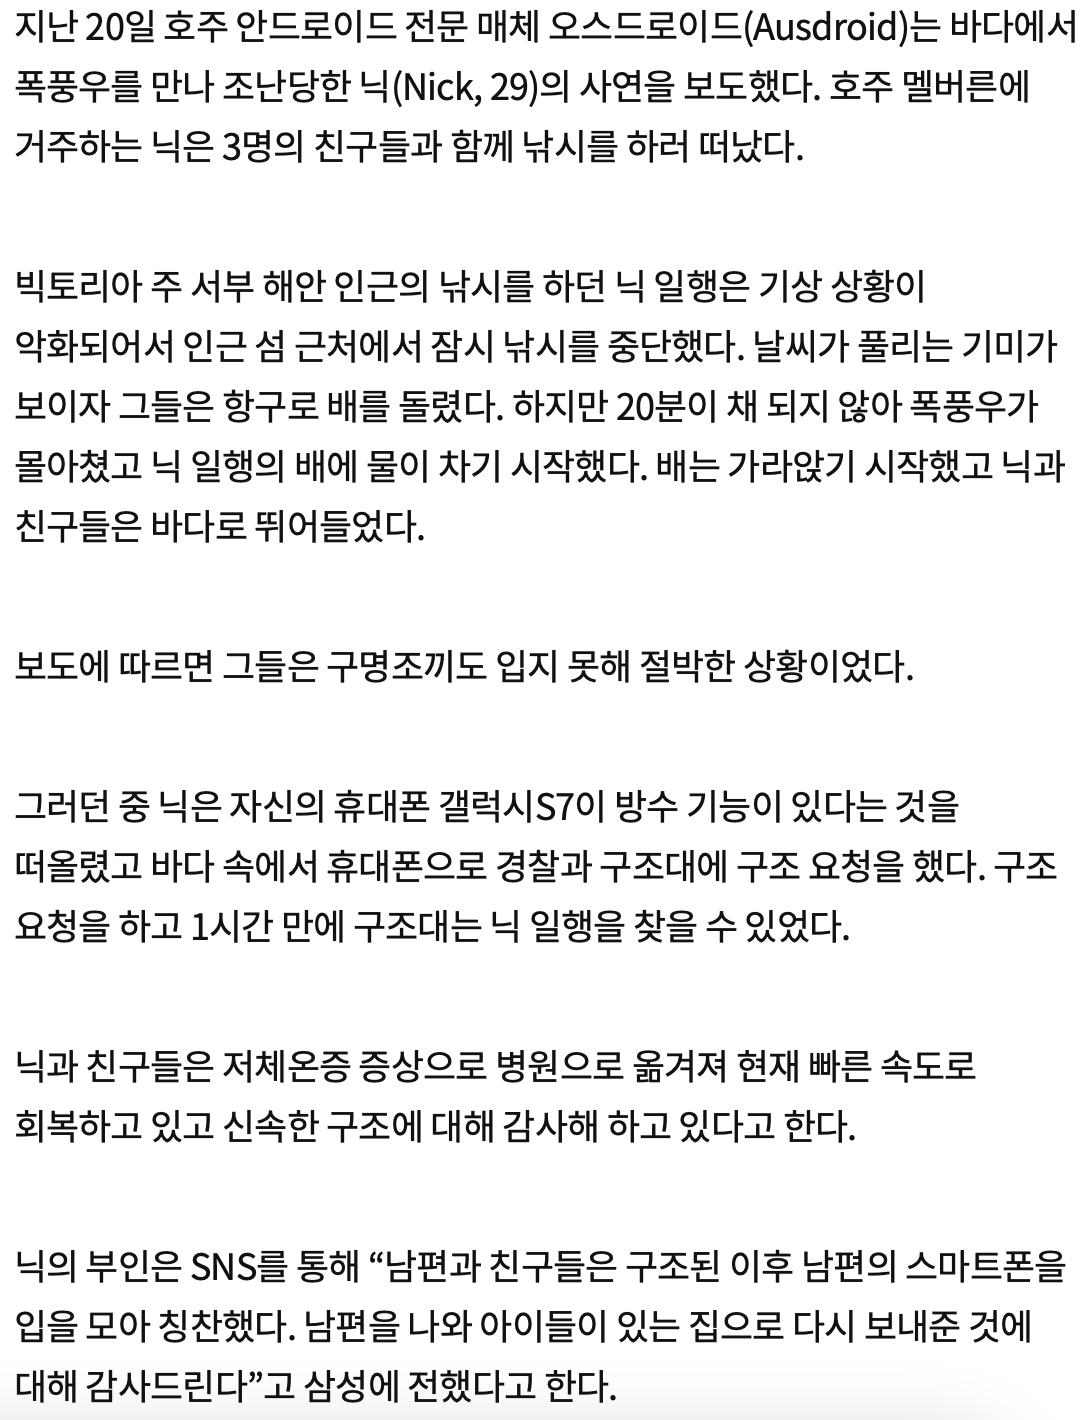 중앙일보 기사 발췌